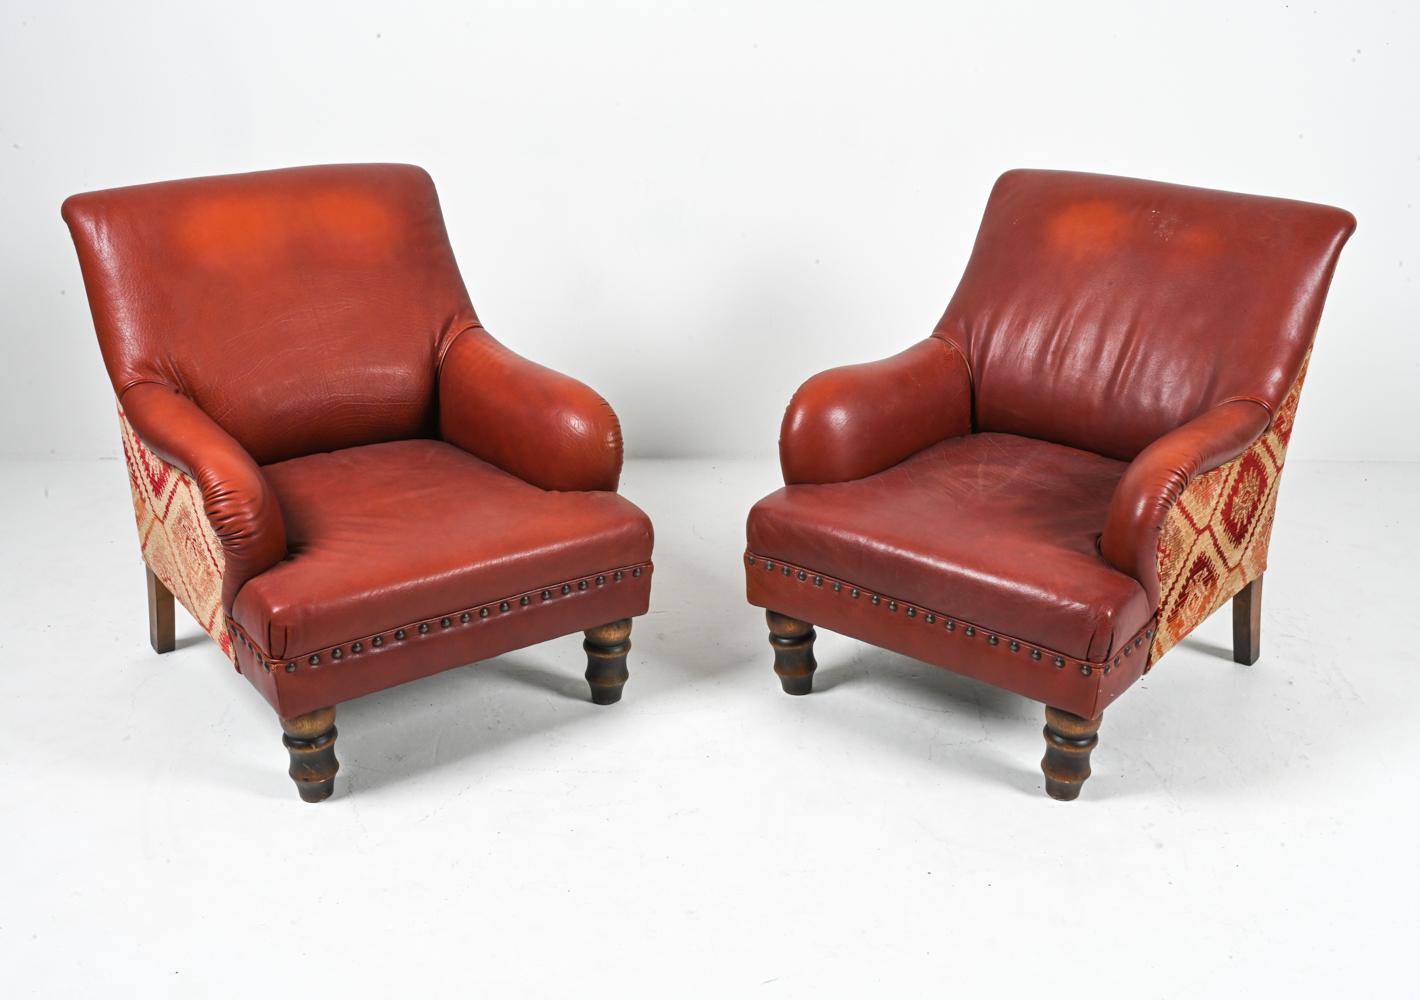 Dieses Paar Roche Bobois Lounge Chairs ist der Inbegriff von Vintage-Luxus und zeugt von unvergleichlicher Handwerkskunst und zeitlosem Design. Die in tiefem Ziegelrot gehaltenen Stühle zeigen die robuste Schönheit von behandeltem Büffelleder oder